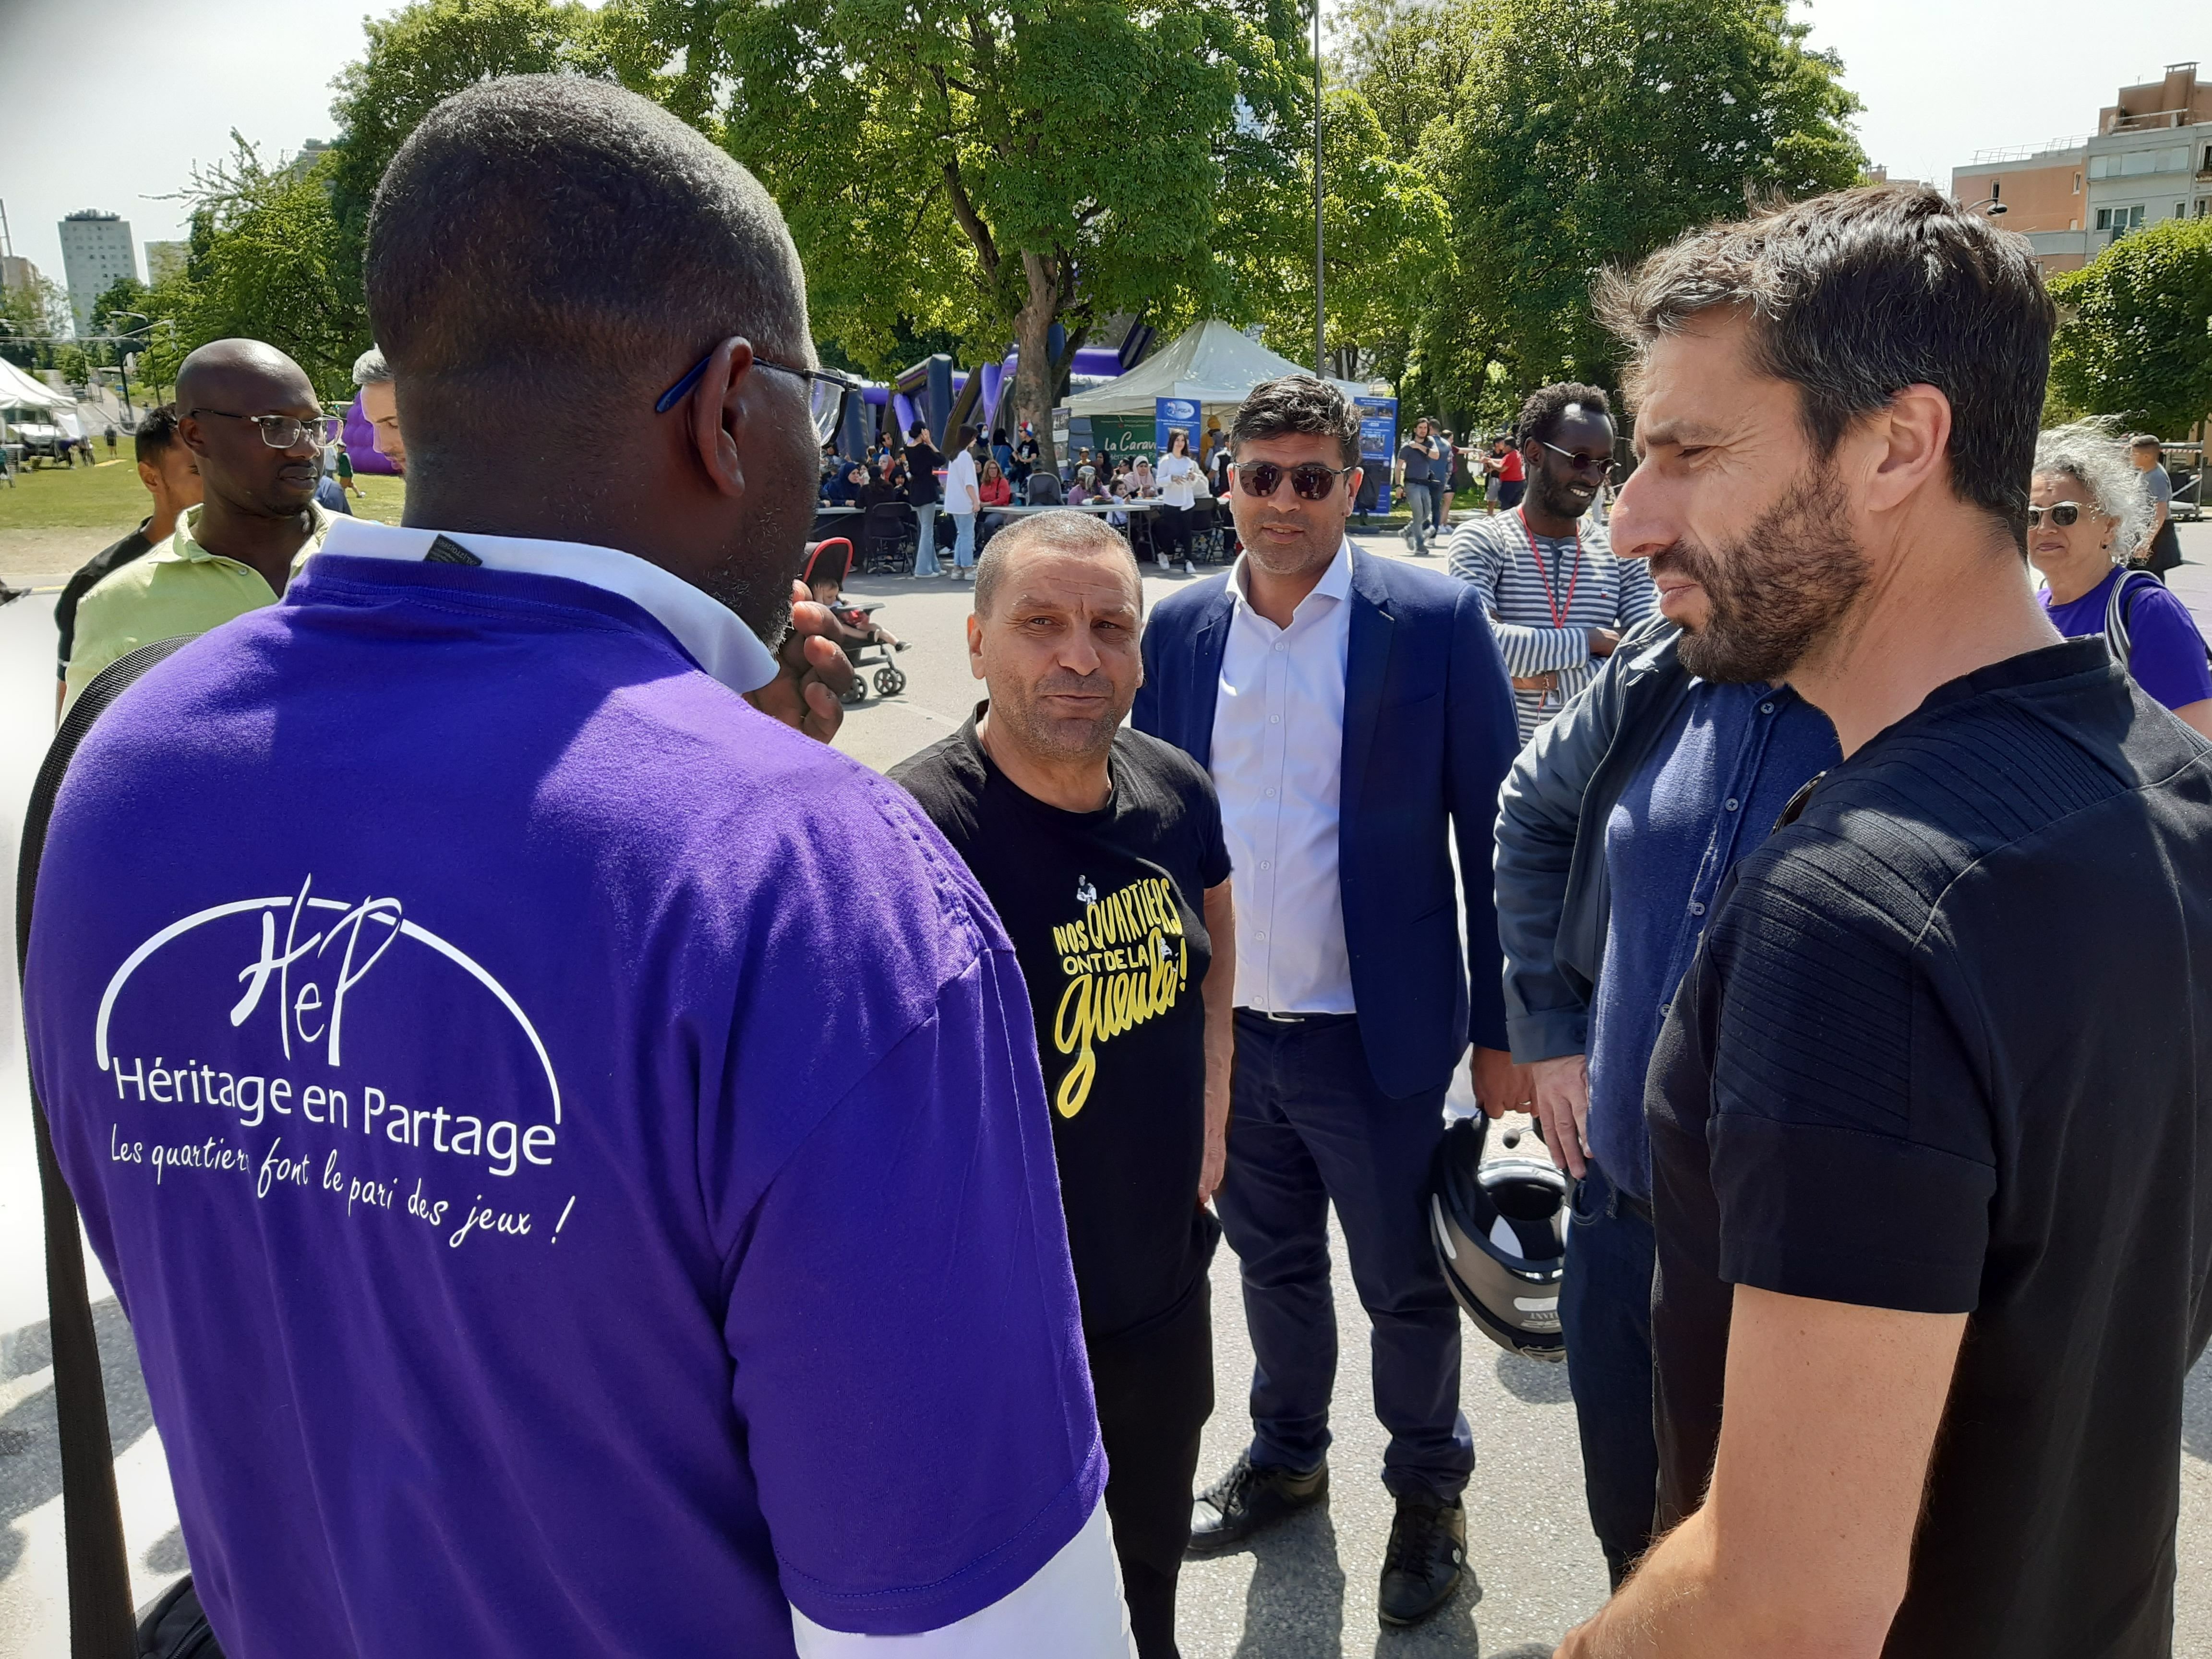 Clichy-sous-Bois. Le président de Paris 2024 Tony Estanguet (à droite) a visité la caravane Héritage en partage, montée par plusieurs collectifs dont celui de Mohammed Mechmache (au centre), AC Lefeu. LP/E.M.